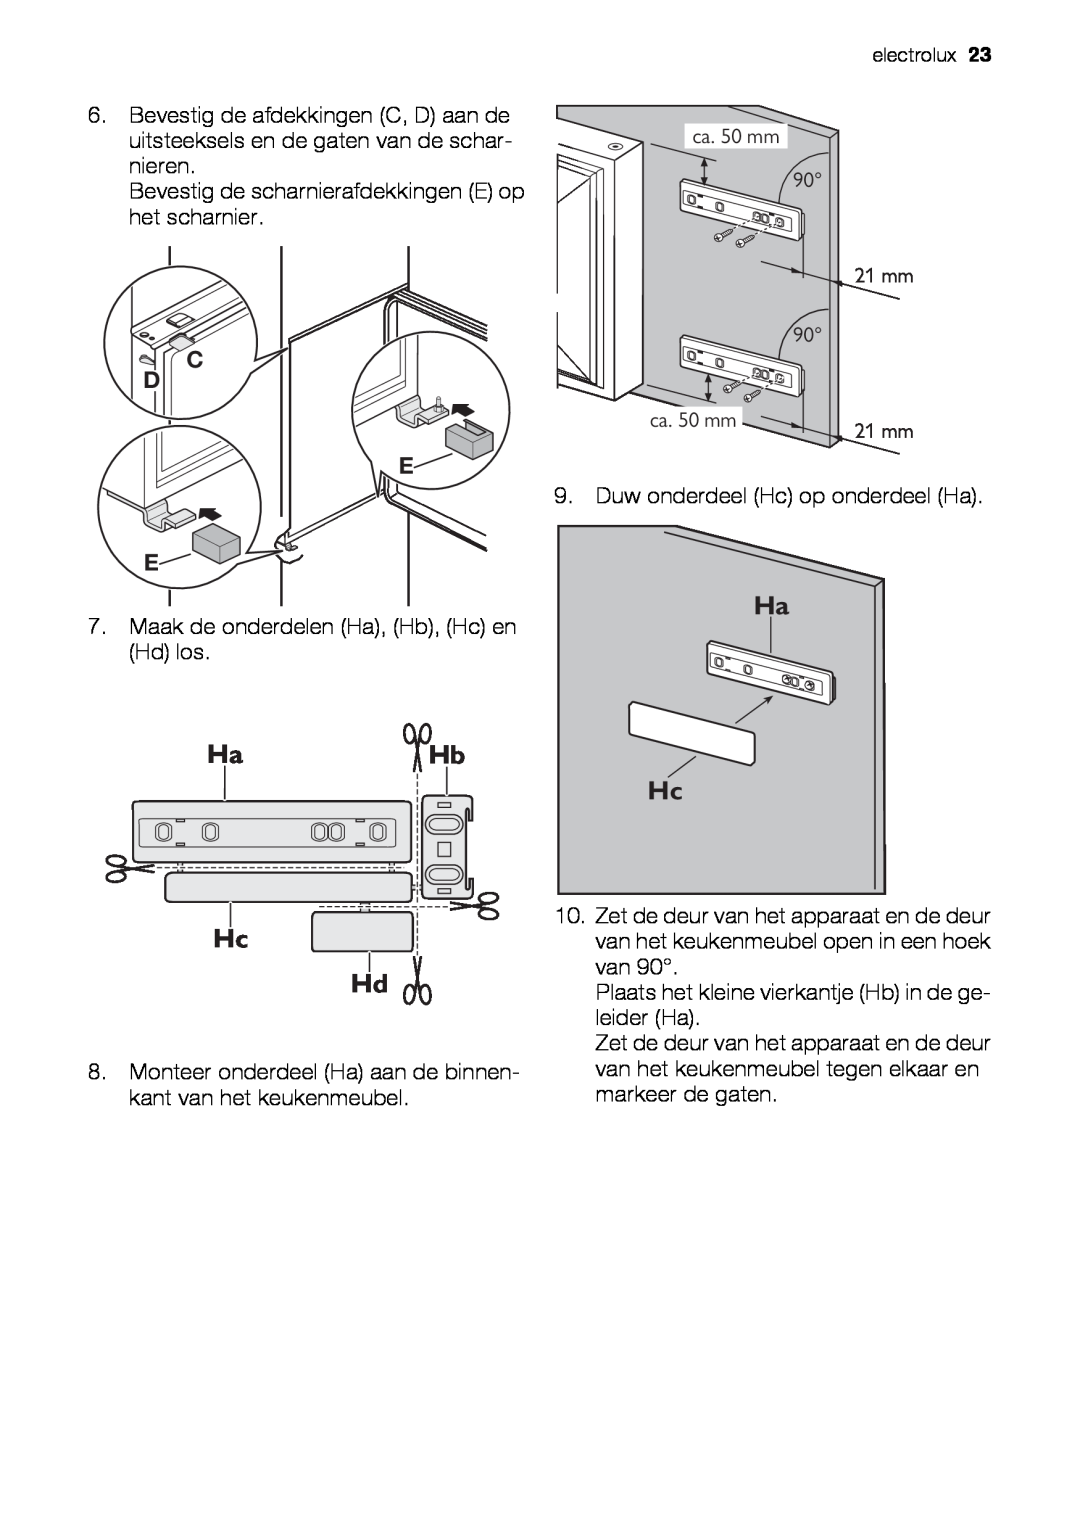 Electrolux EUN12510 user manual HaHb Hc Hd, Bevestig de scharnierafdekkingen E op het scharnier 